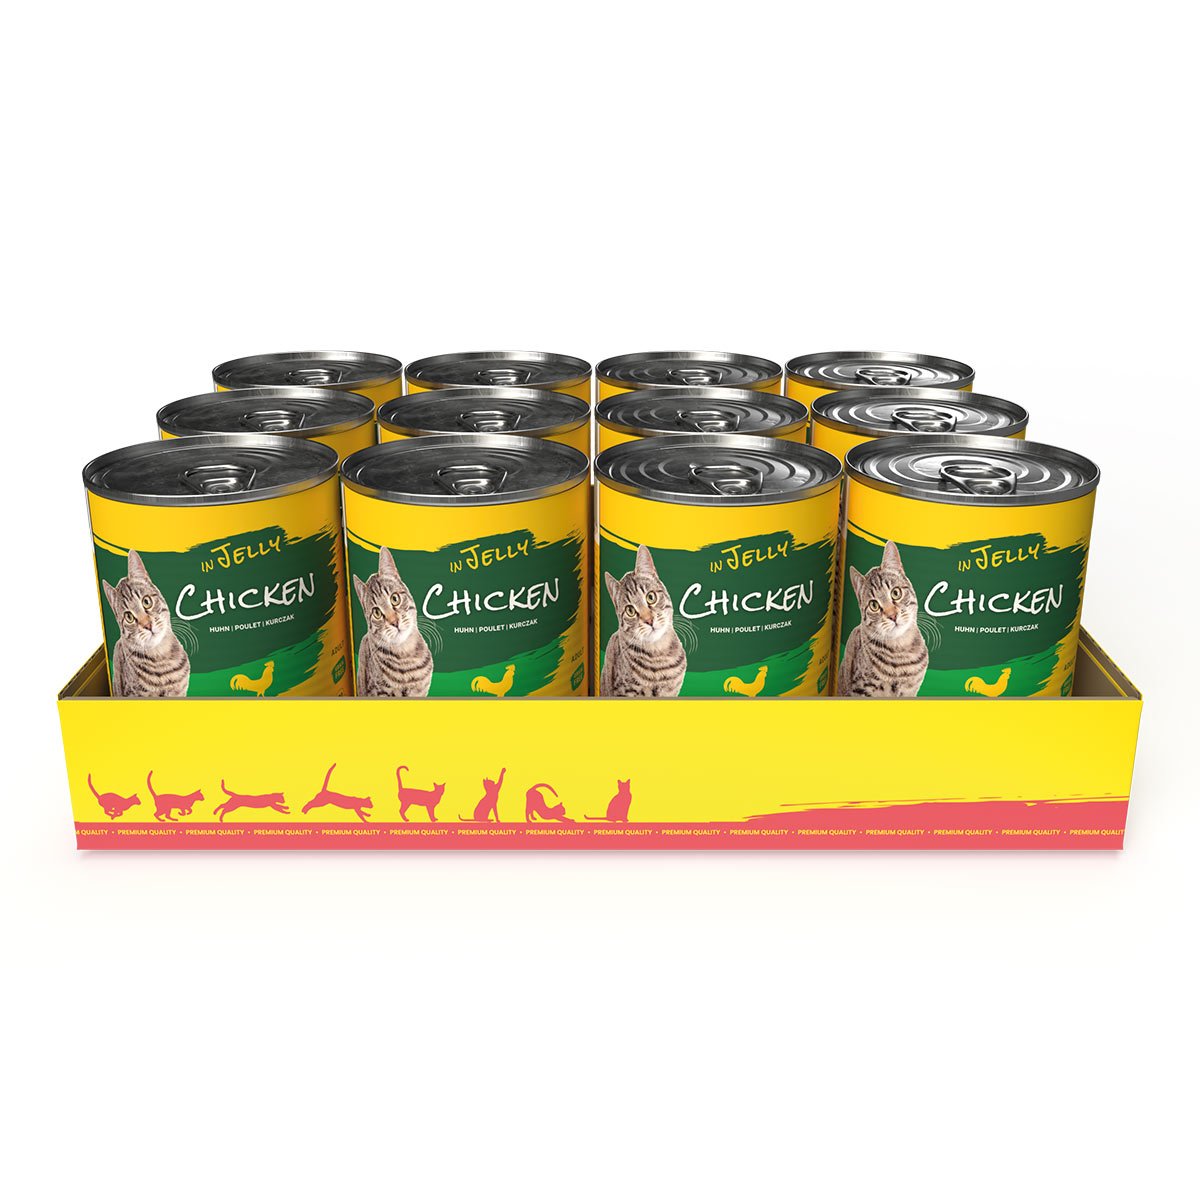 JosiCat konzerva v želé 24 x 400 g - kuřecí